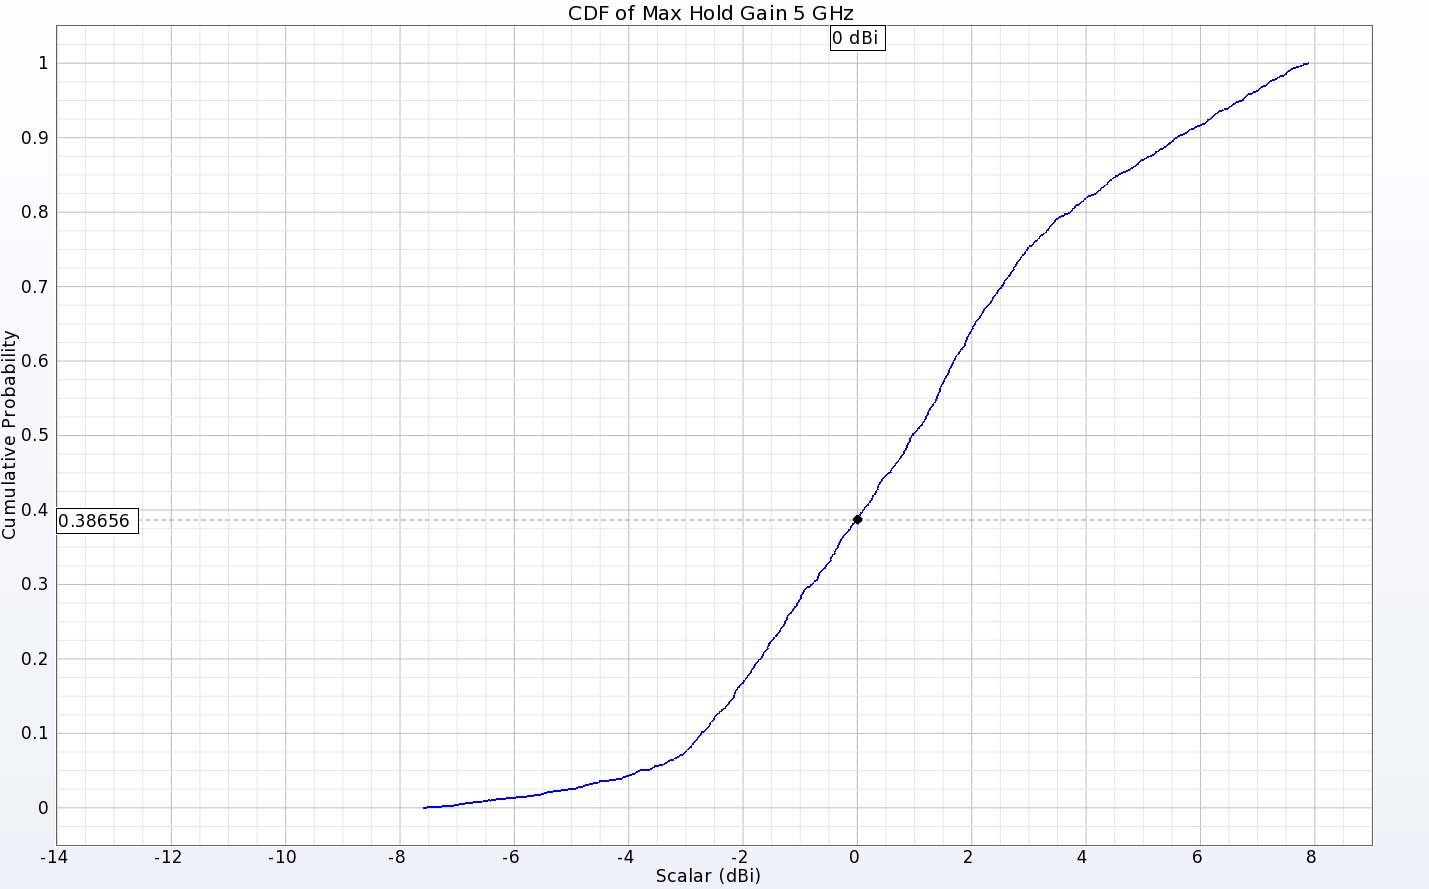 图 11：两根天线在 5 千兆赫频率下的 EIRP CDF 图显示，约 60% 的方向都有正增益。